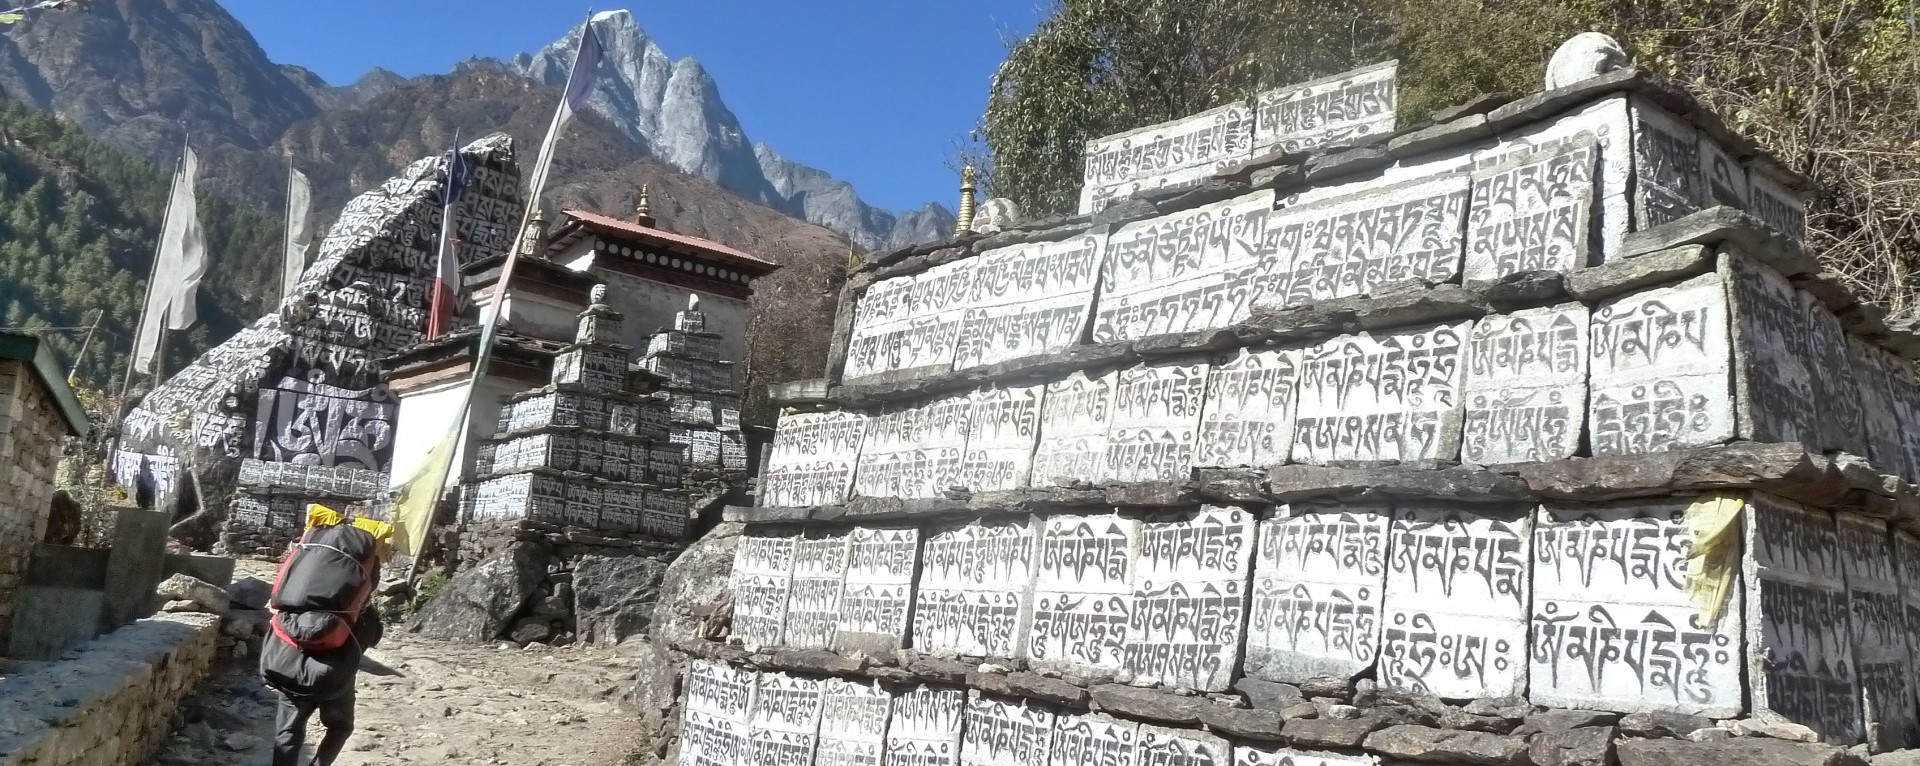 Buddhist stupas and mane walls on Everest base camp trail